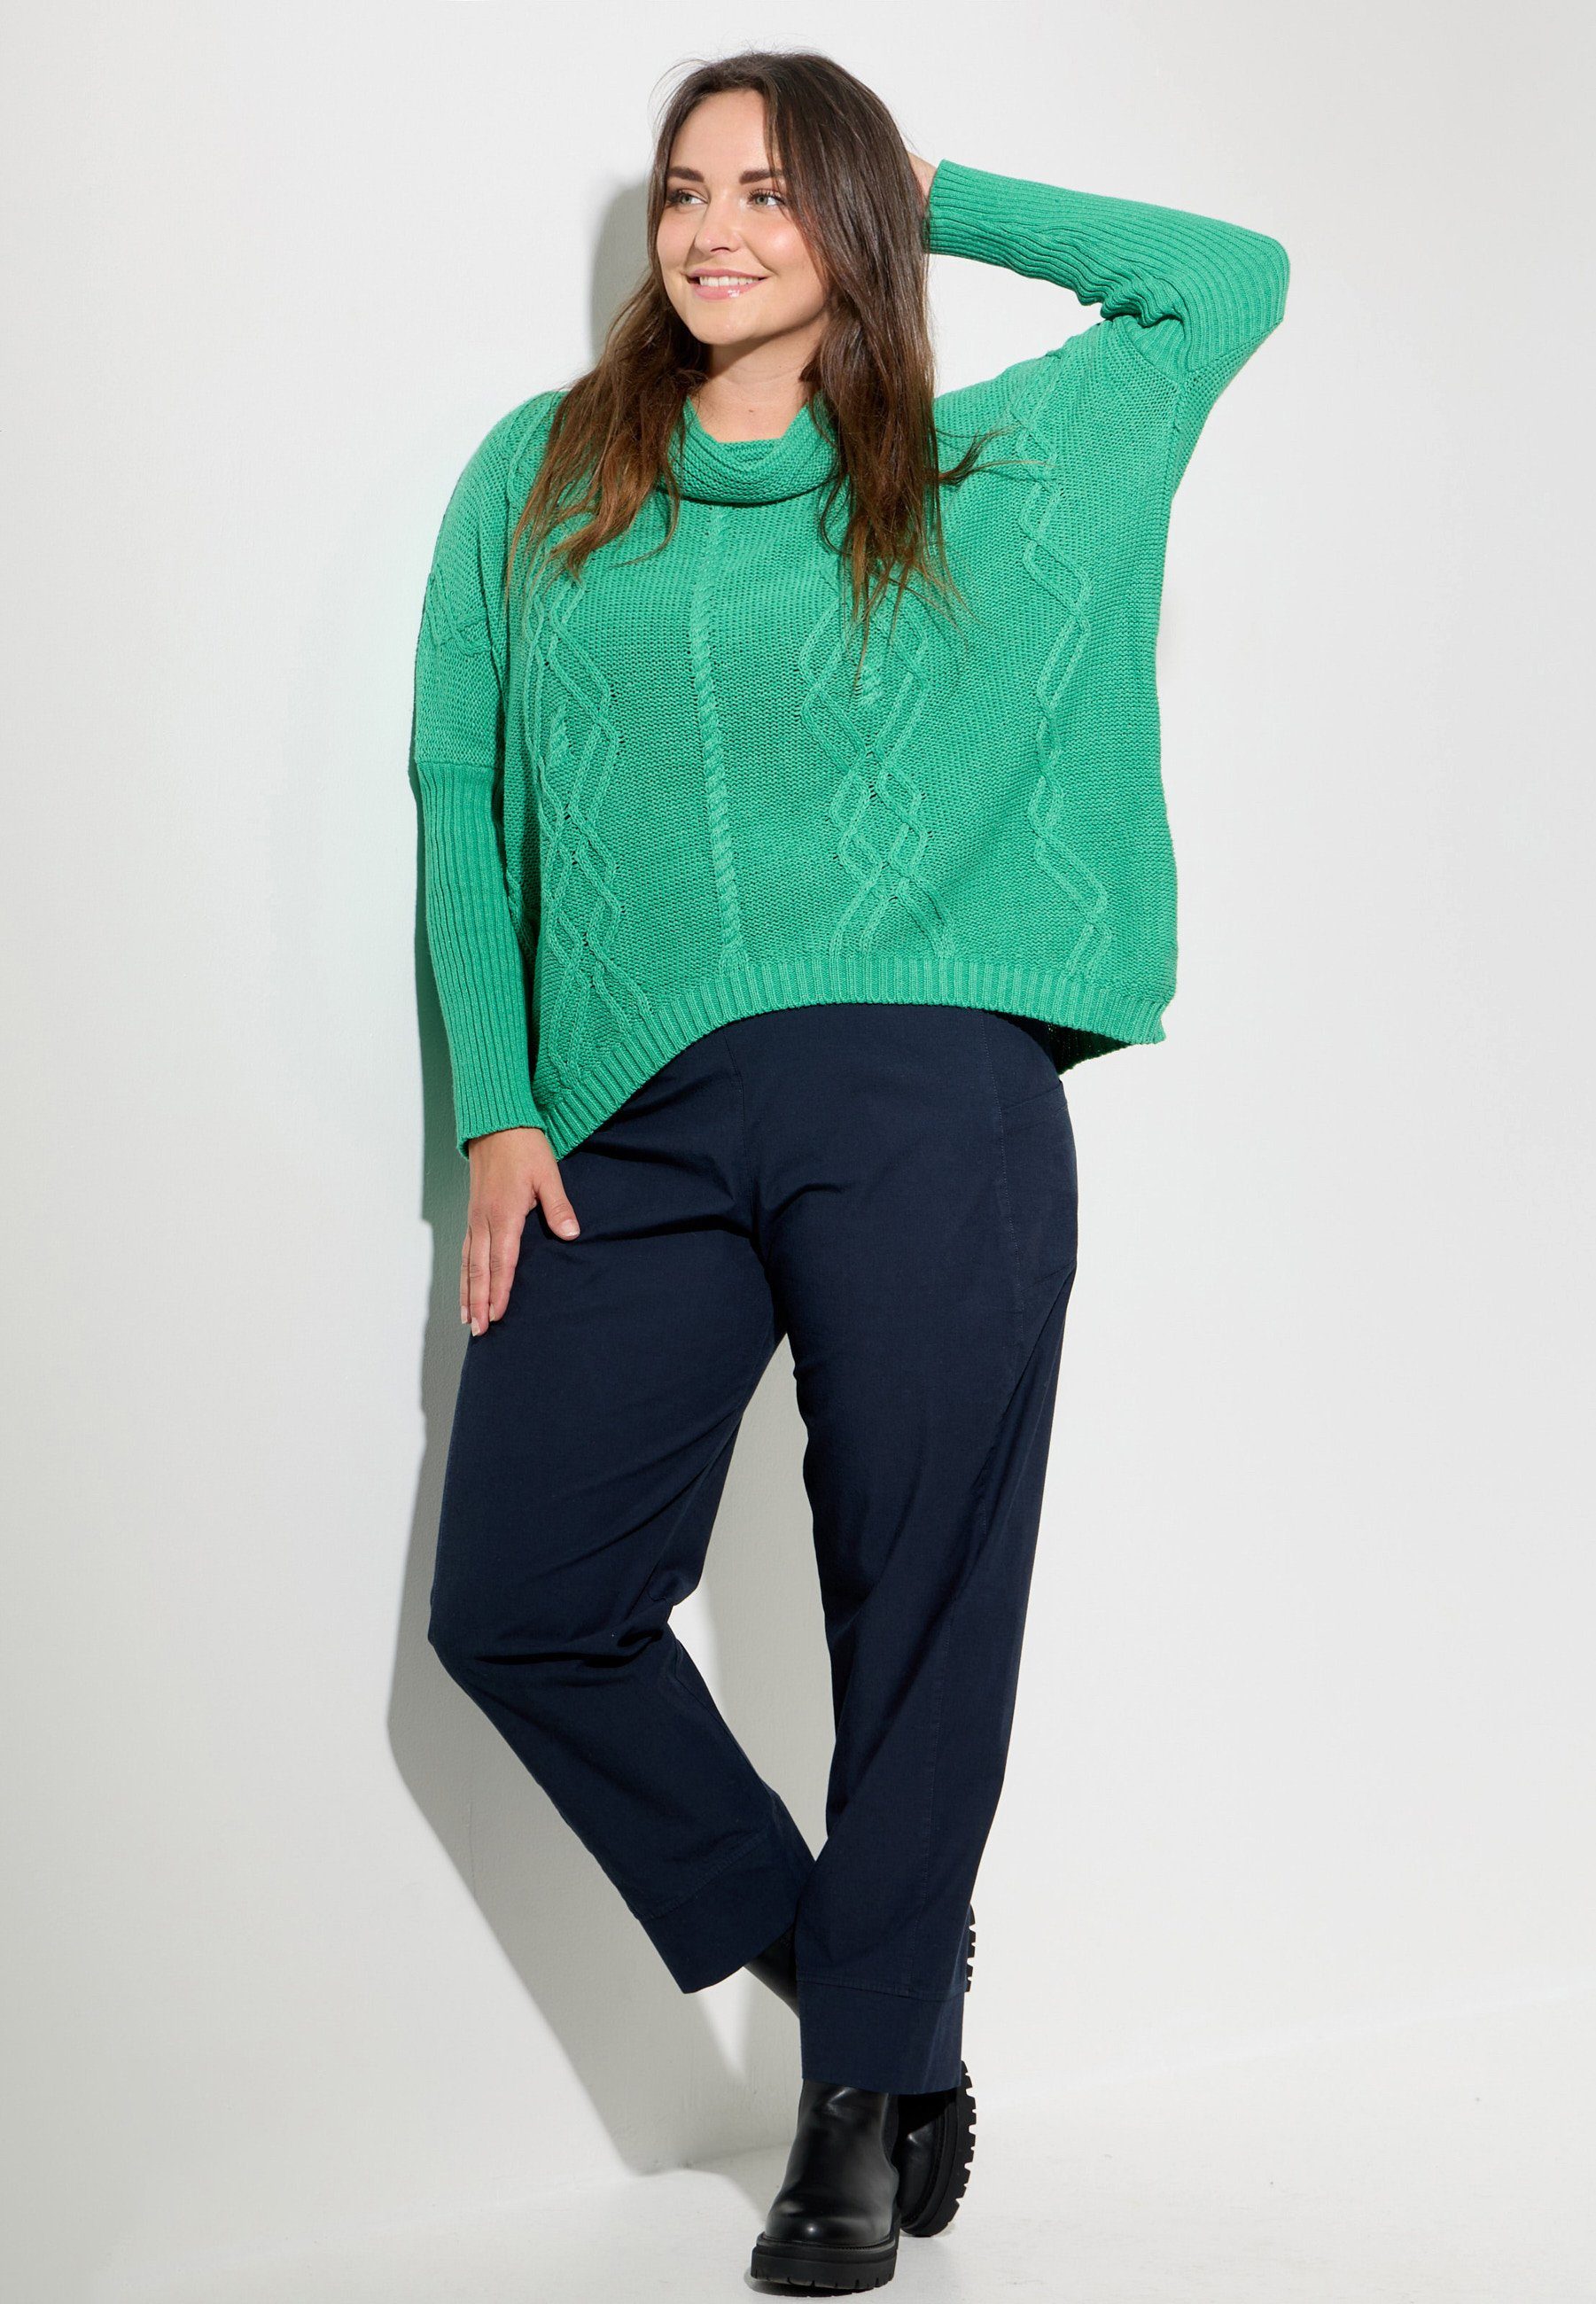 Kekoo Strickpullover aus Smaragd Baumwolle Schalkragen 100% 'Pure' Poncho-Shirt Strick mit